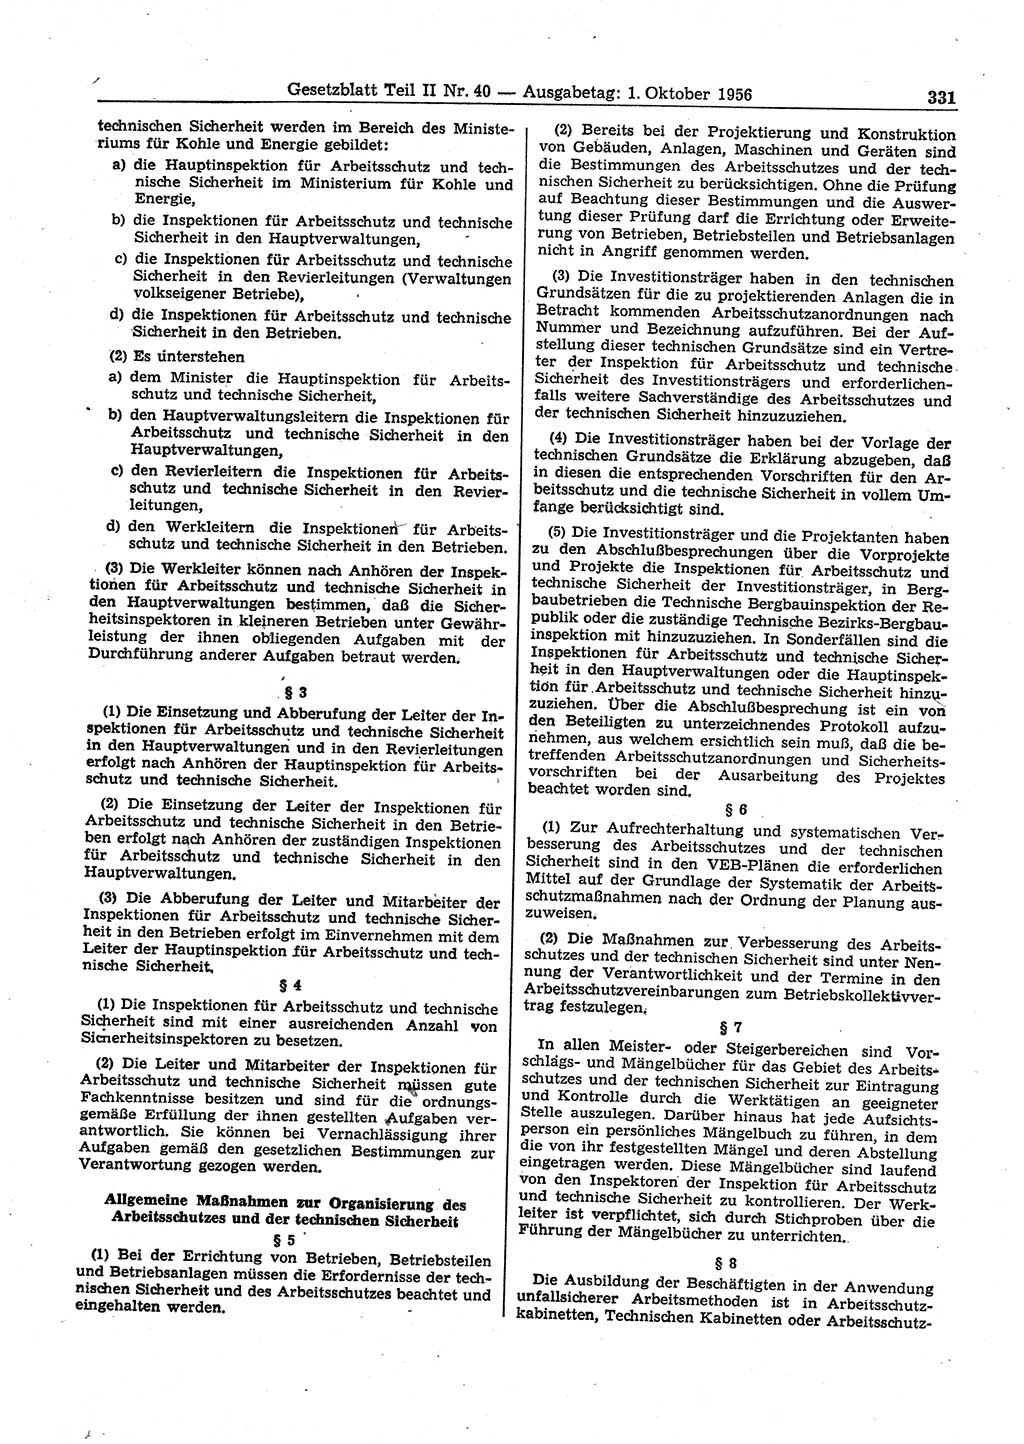 Gesetzblatt (GBl.) der Deutschen Demokratischen Republik (DDR) Teil ⅠⅠ 1956, Seite 331 (GBl. DDR ⅠⅠ 1956, S. 331)